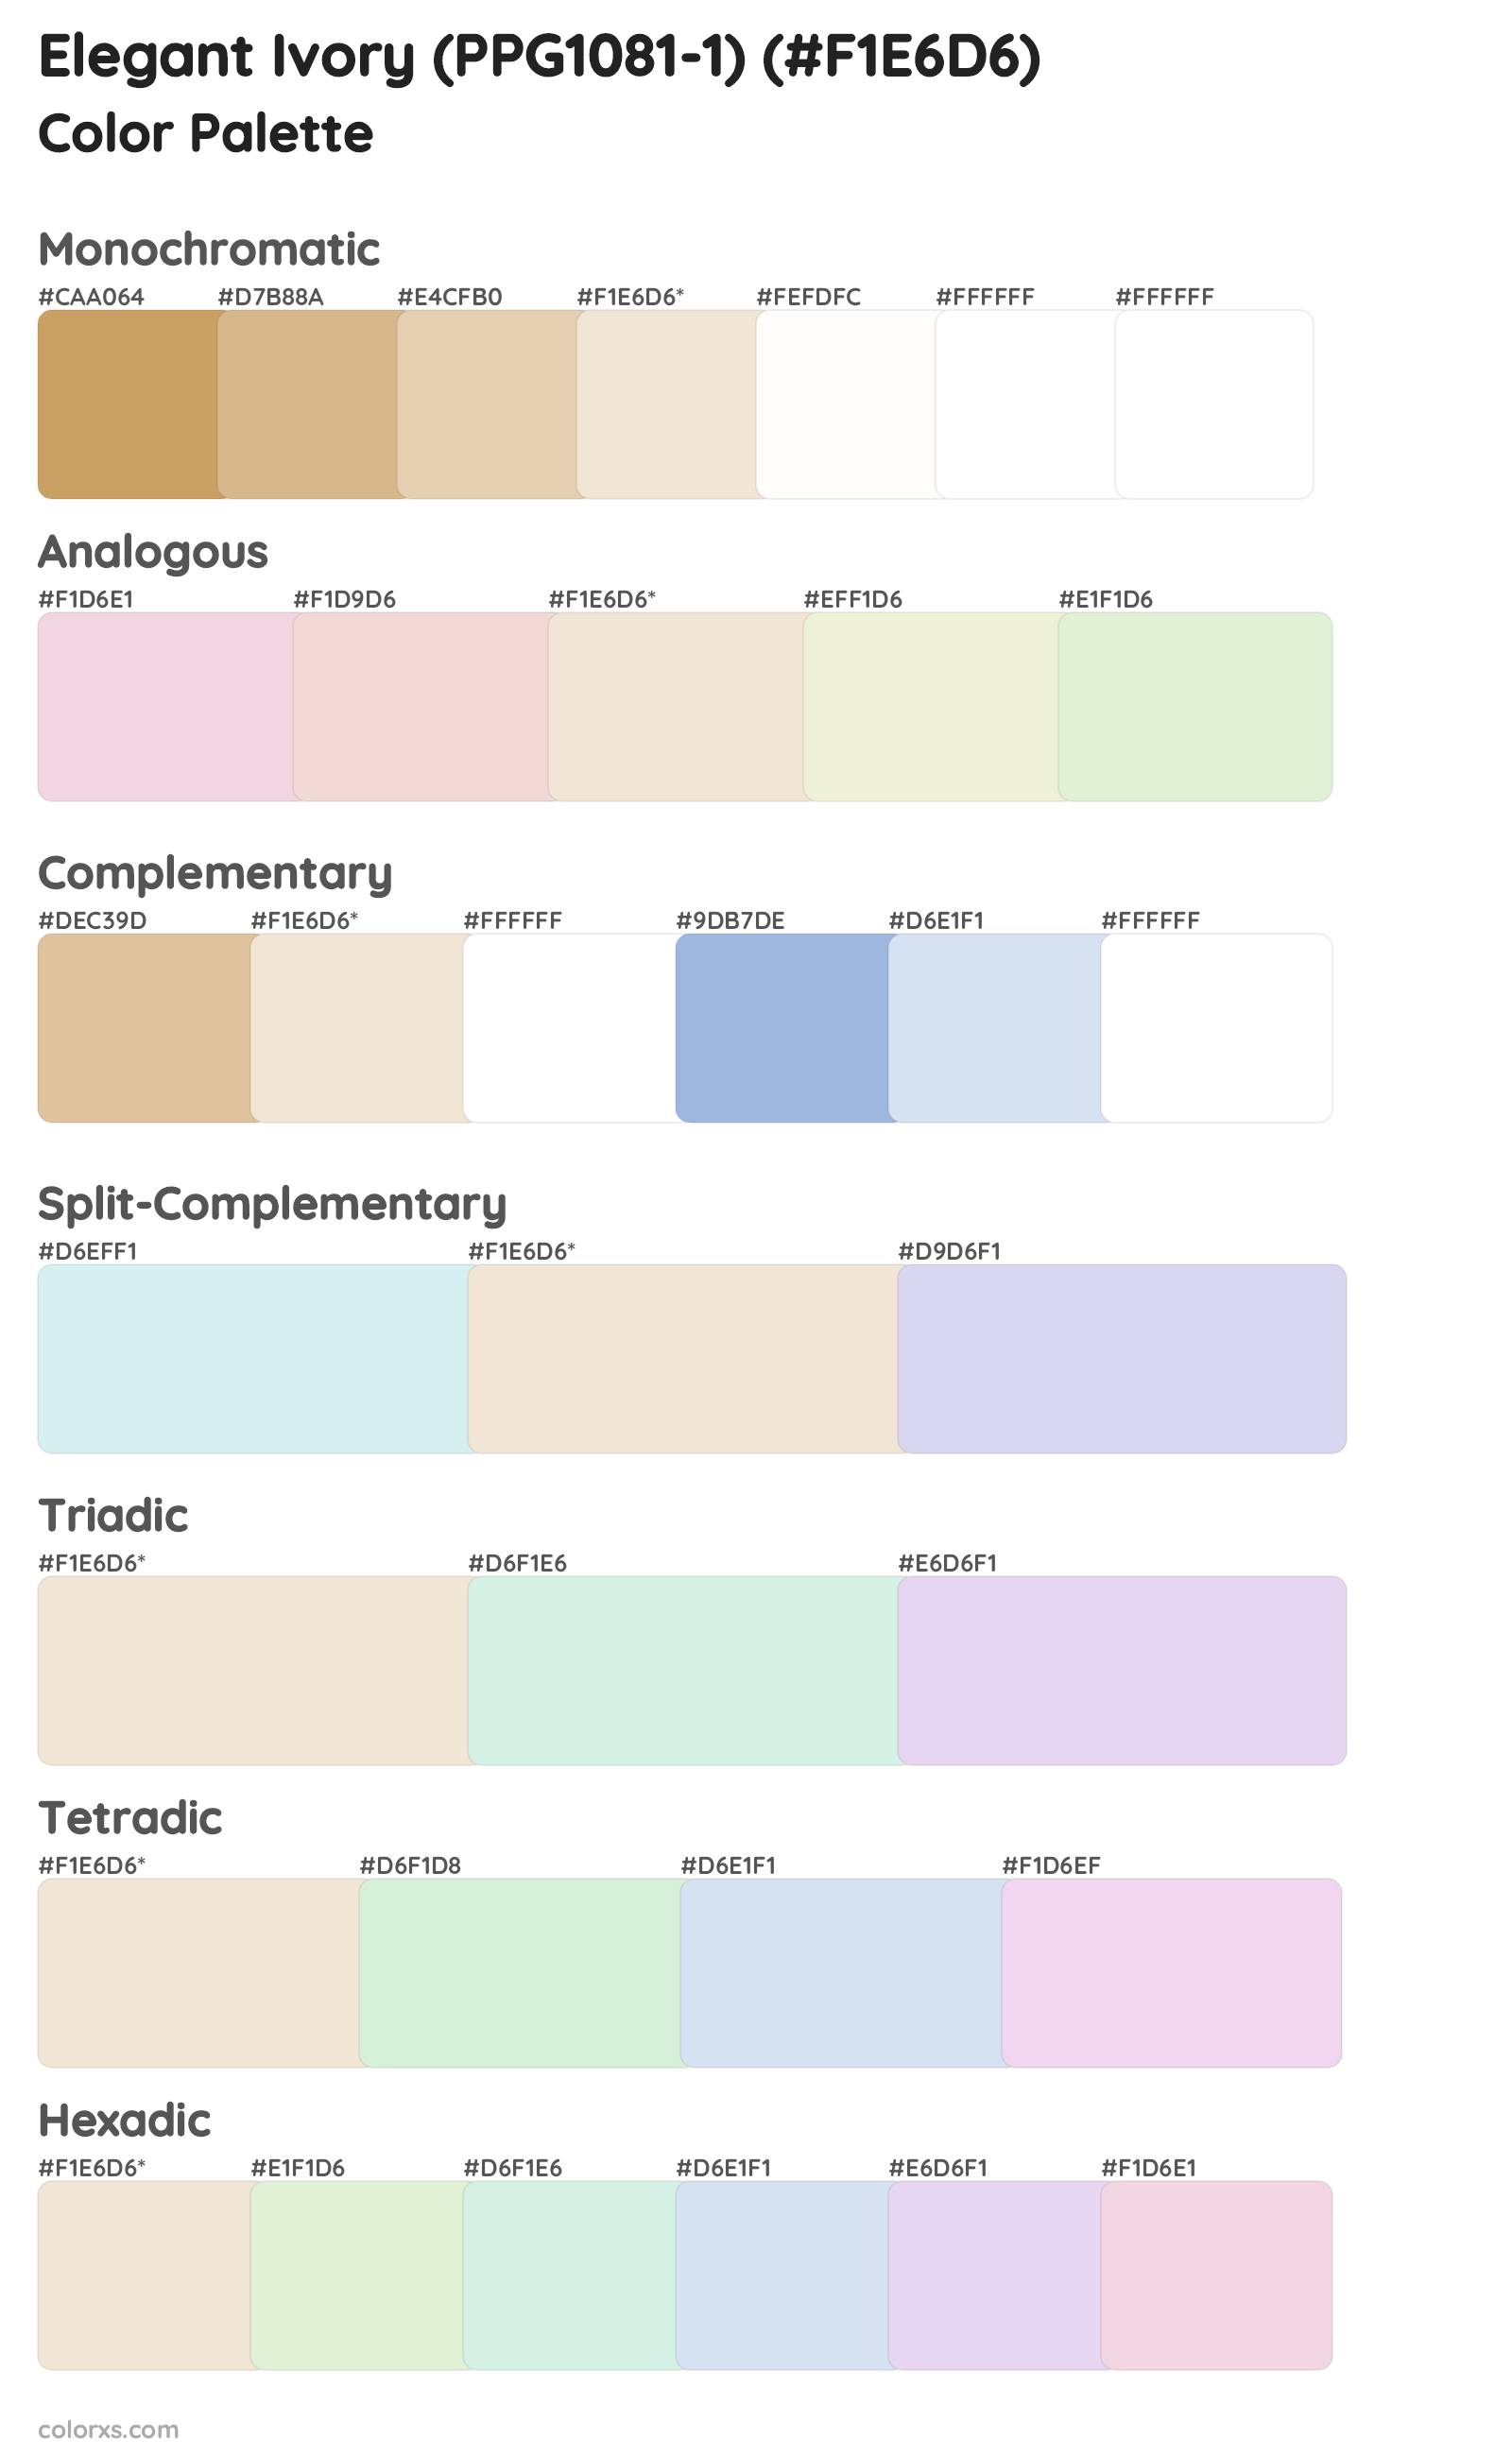 Elegant Ivory (PPG1081-1) Color Scheme Palettes